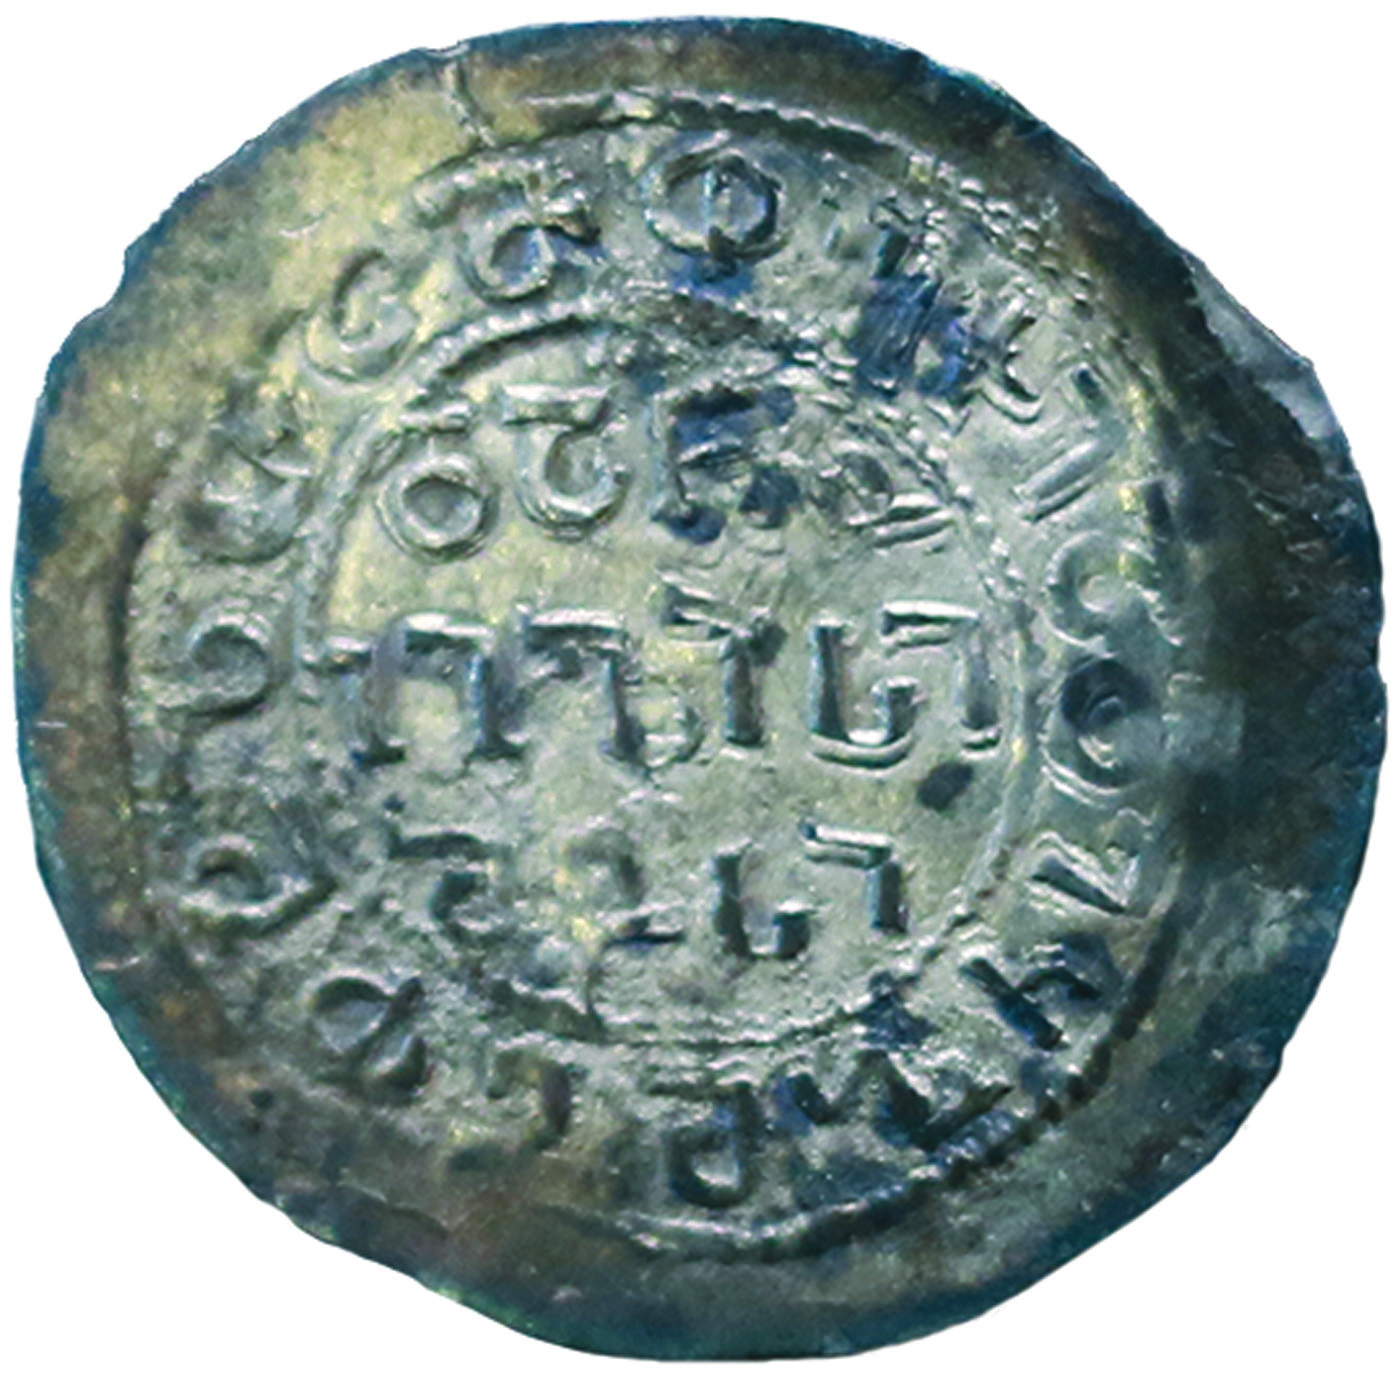 Монета царя абхазов и картвелов Баграта IV с титулом «нобилиссимус», XI в.